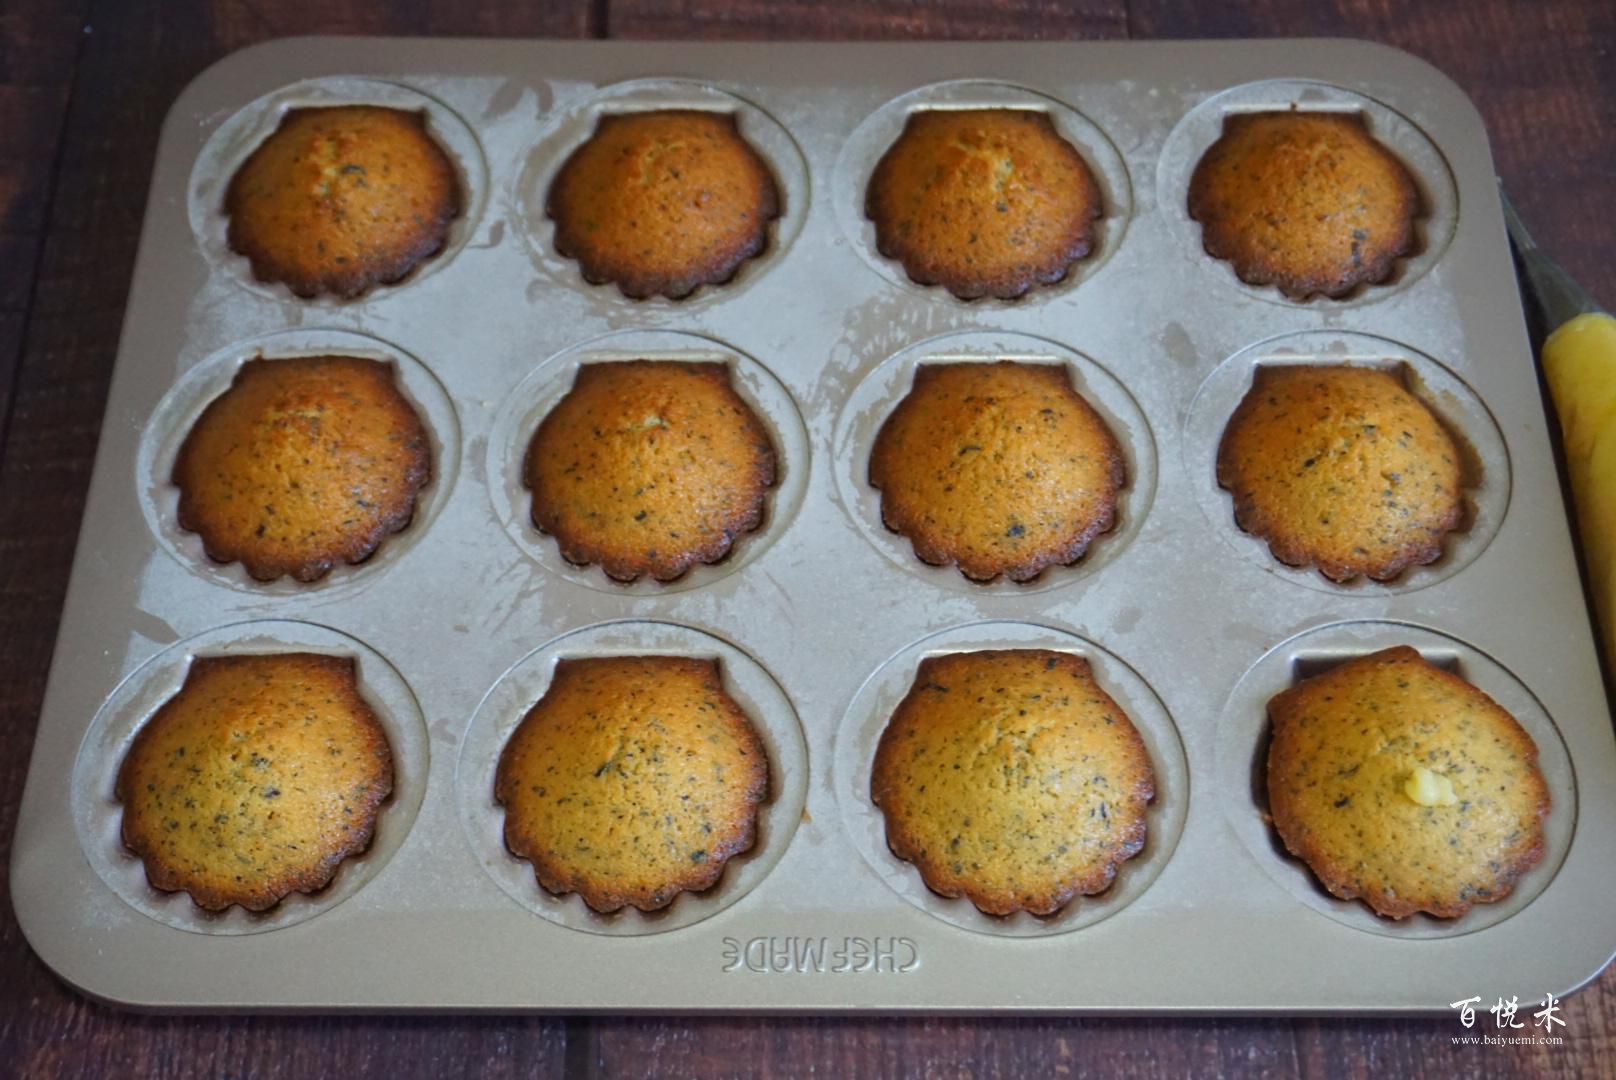 法国最受欢迎的甜点，烘焙新手也能一次成功的伯爵红茶玛德琳蛋糕